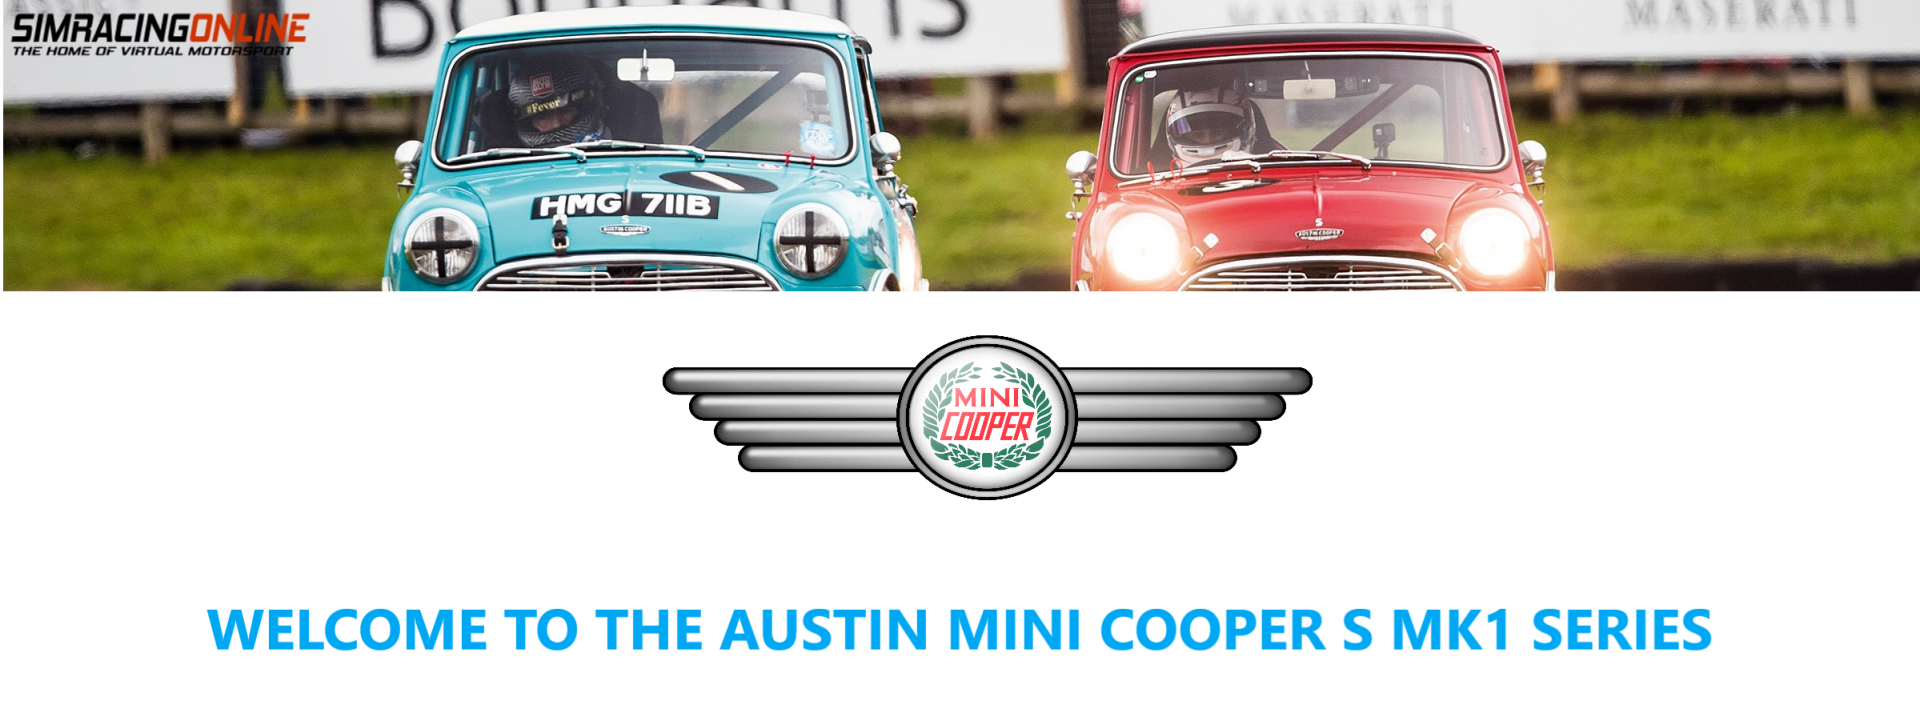 Mini Cooper kop.png